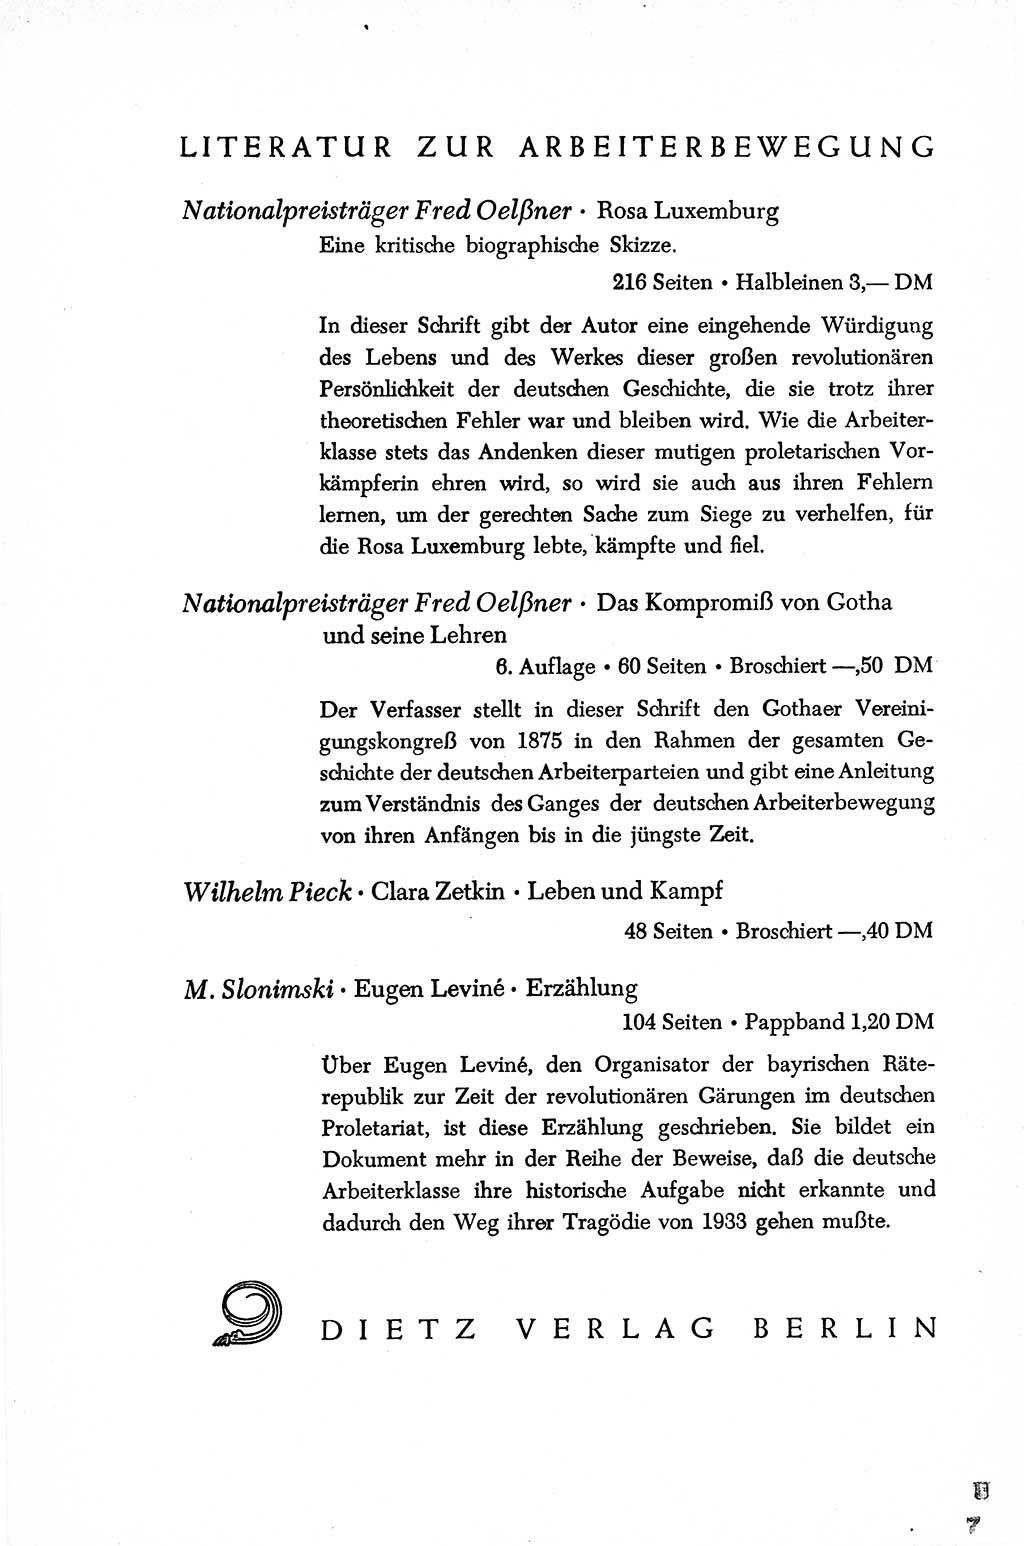 Dokumente der Sozialistischen Einheitspartei Deutschlands (SED) [Sowjetische Besatzungszone (SBZ) Deutschlands/Deutsche Demokratische Republik (DDR)] 1948-1950, Seite 488 (Dok. SED SBZ Dtl. DDR 1948-1950, S. 488)